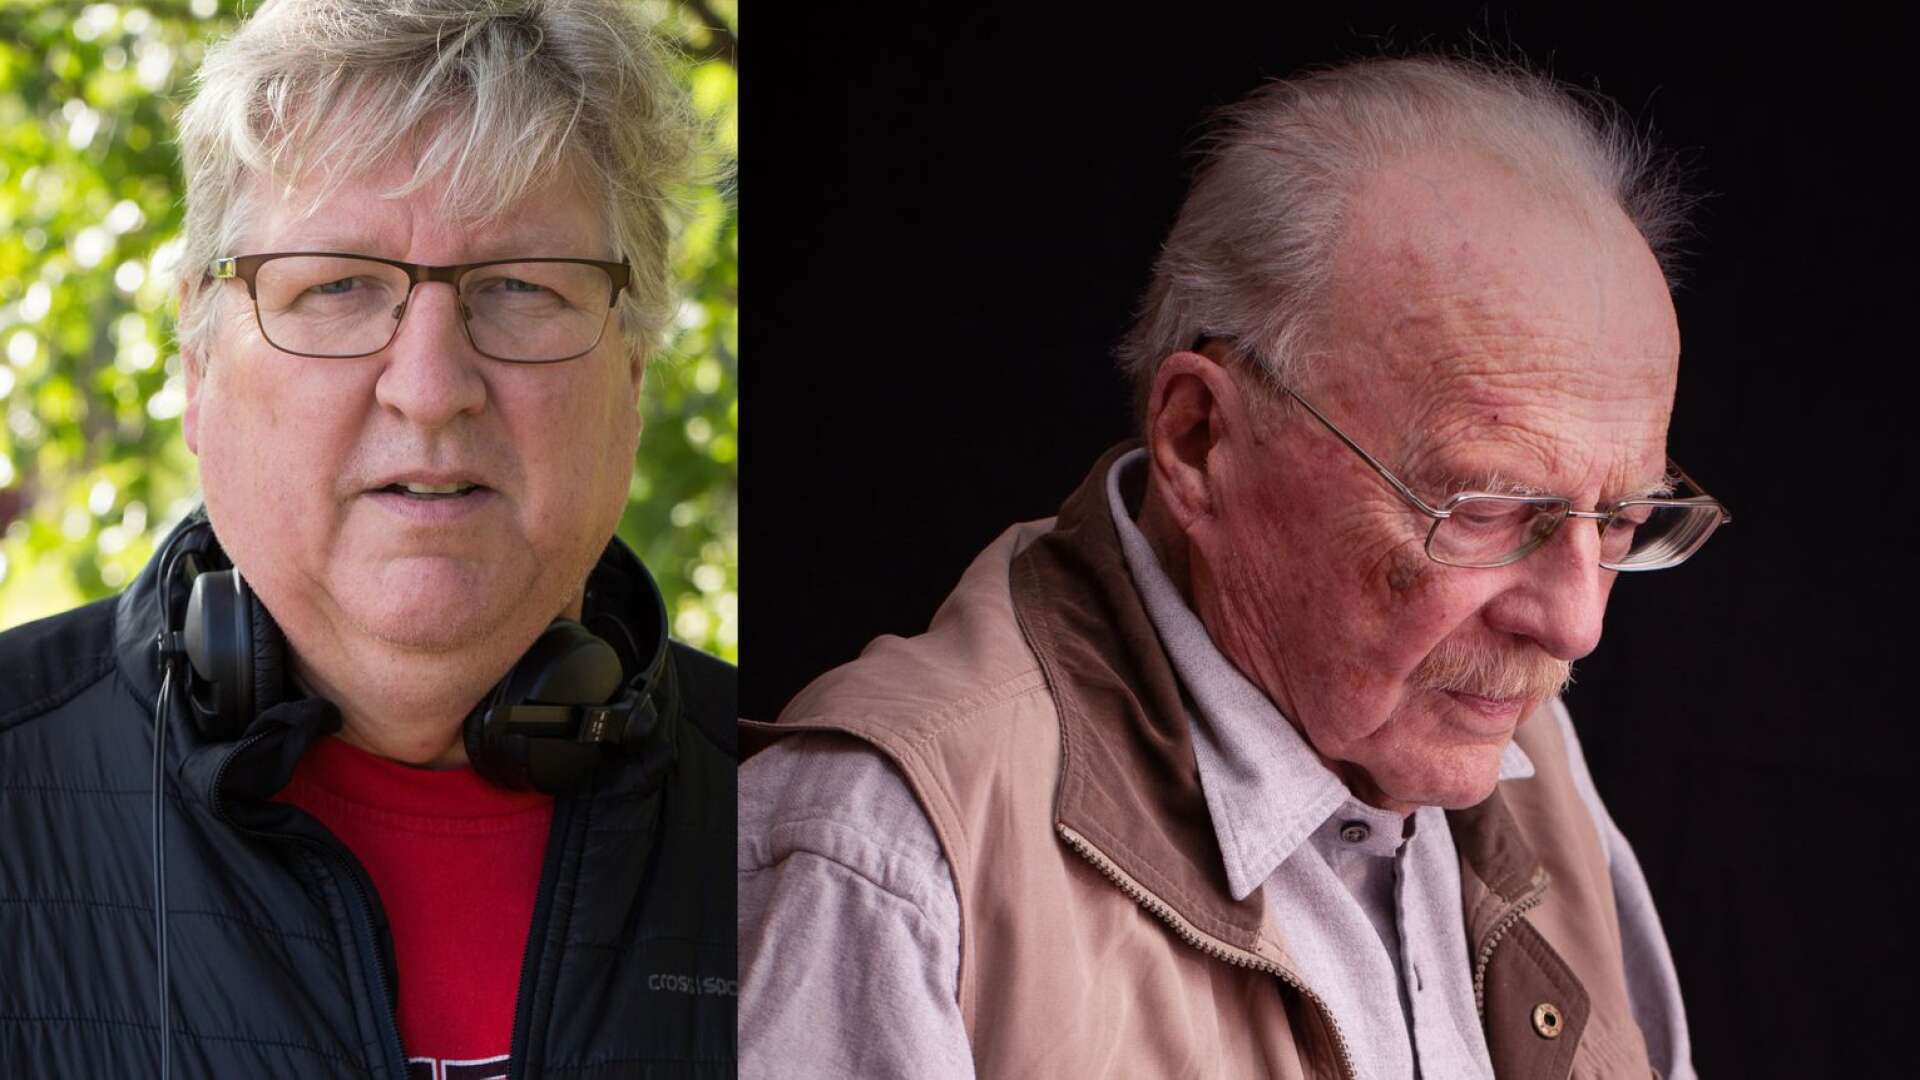 Bengt Löfgrens film följer Jan Myrdal under sina sista år i livet. &quot;Det intressanta har inte varit kontroverserna, i stället har vi fokuserat på åldrandet&quot;, menar den värmländske filmaren.